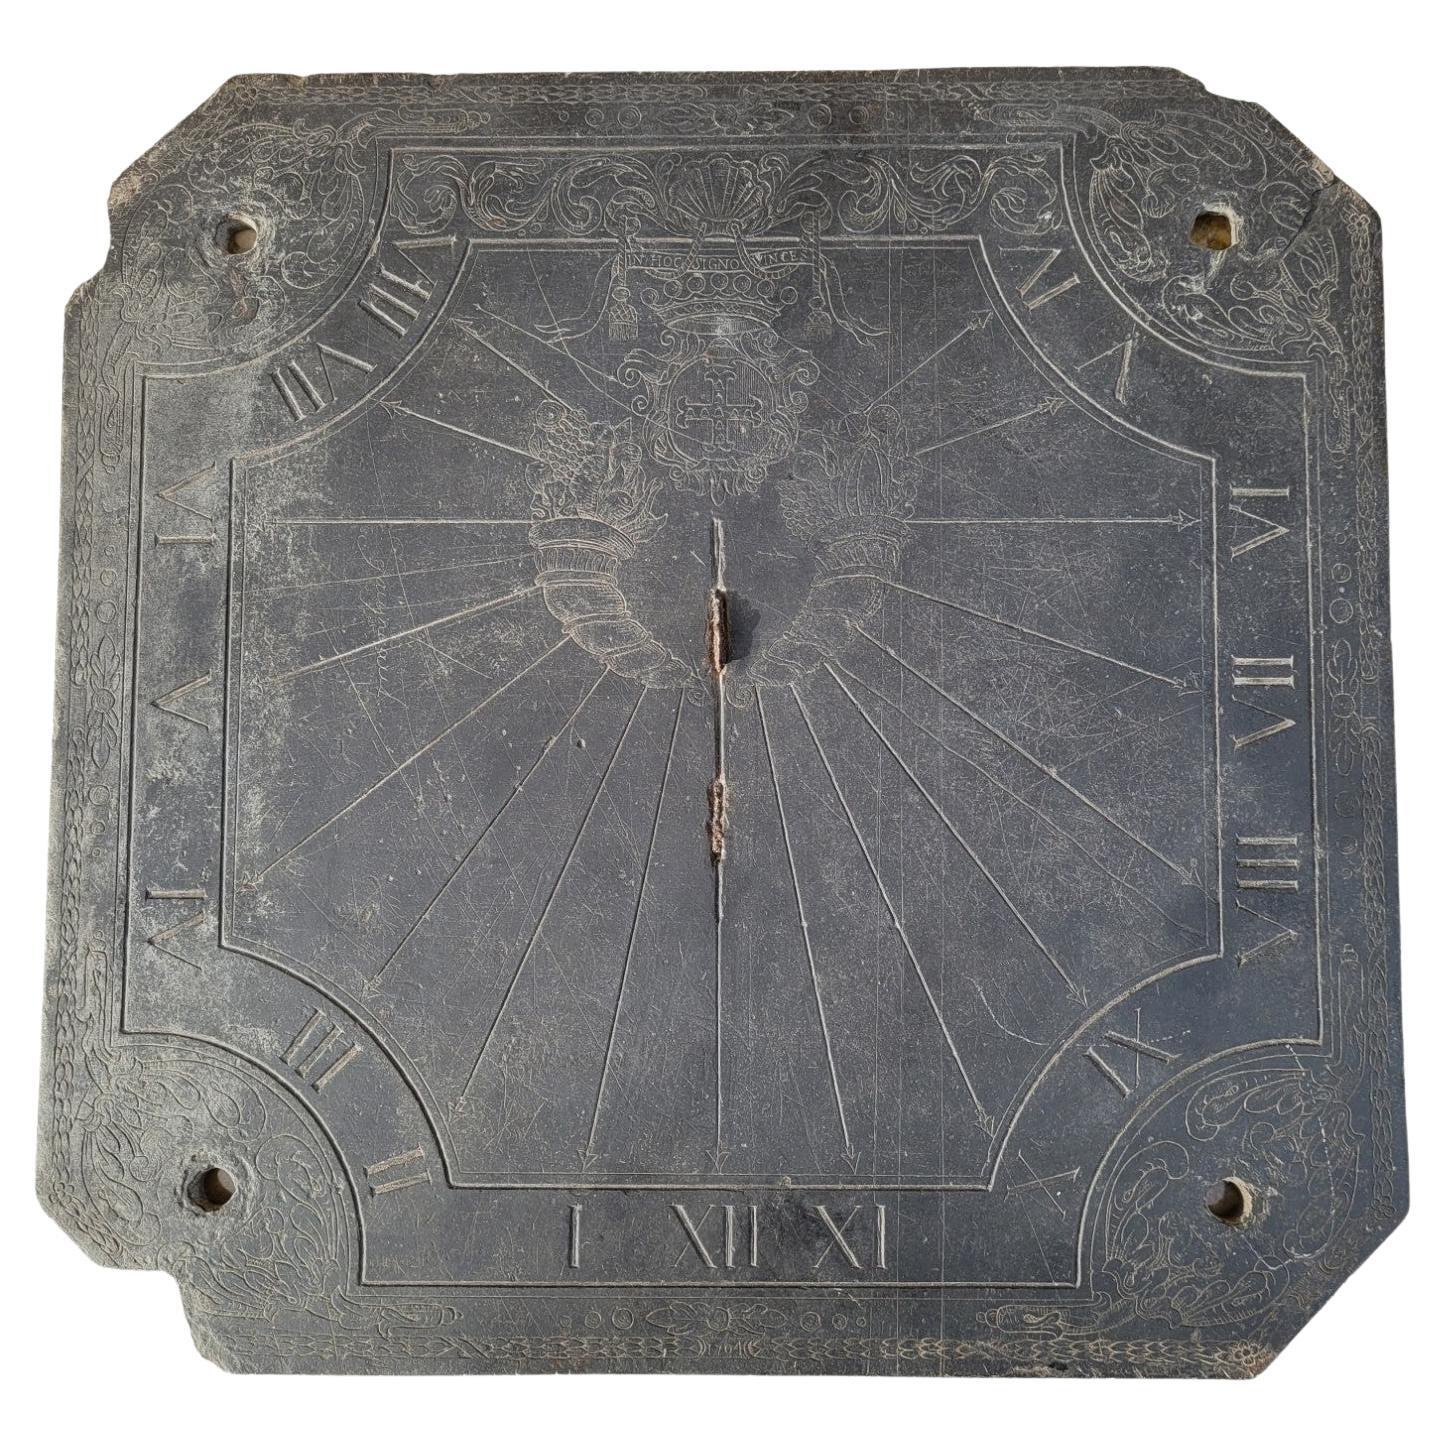 Sundial aus Schiefer, dekoriert und datiert 1704